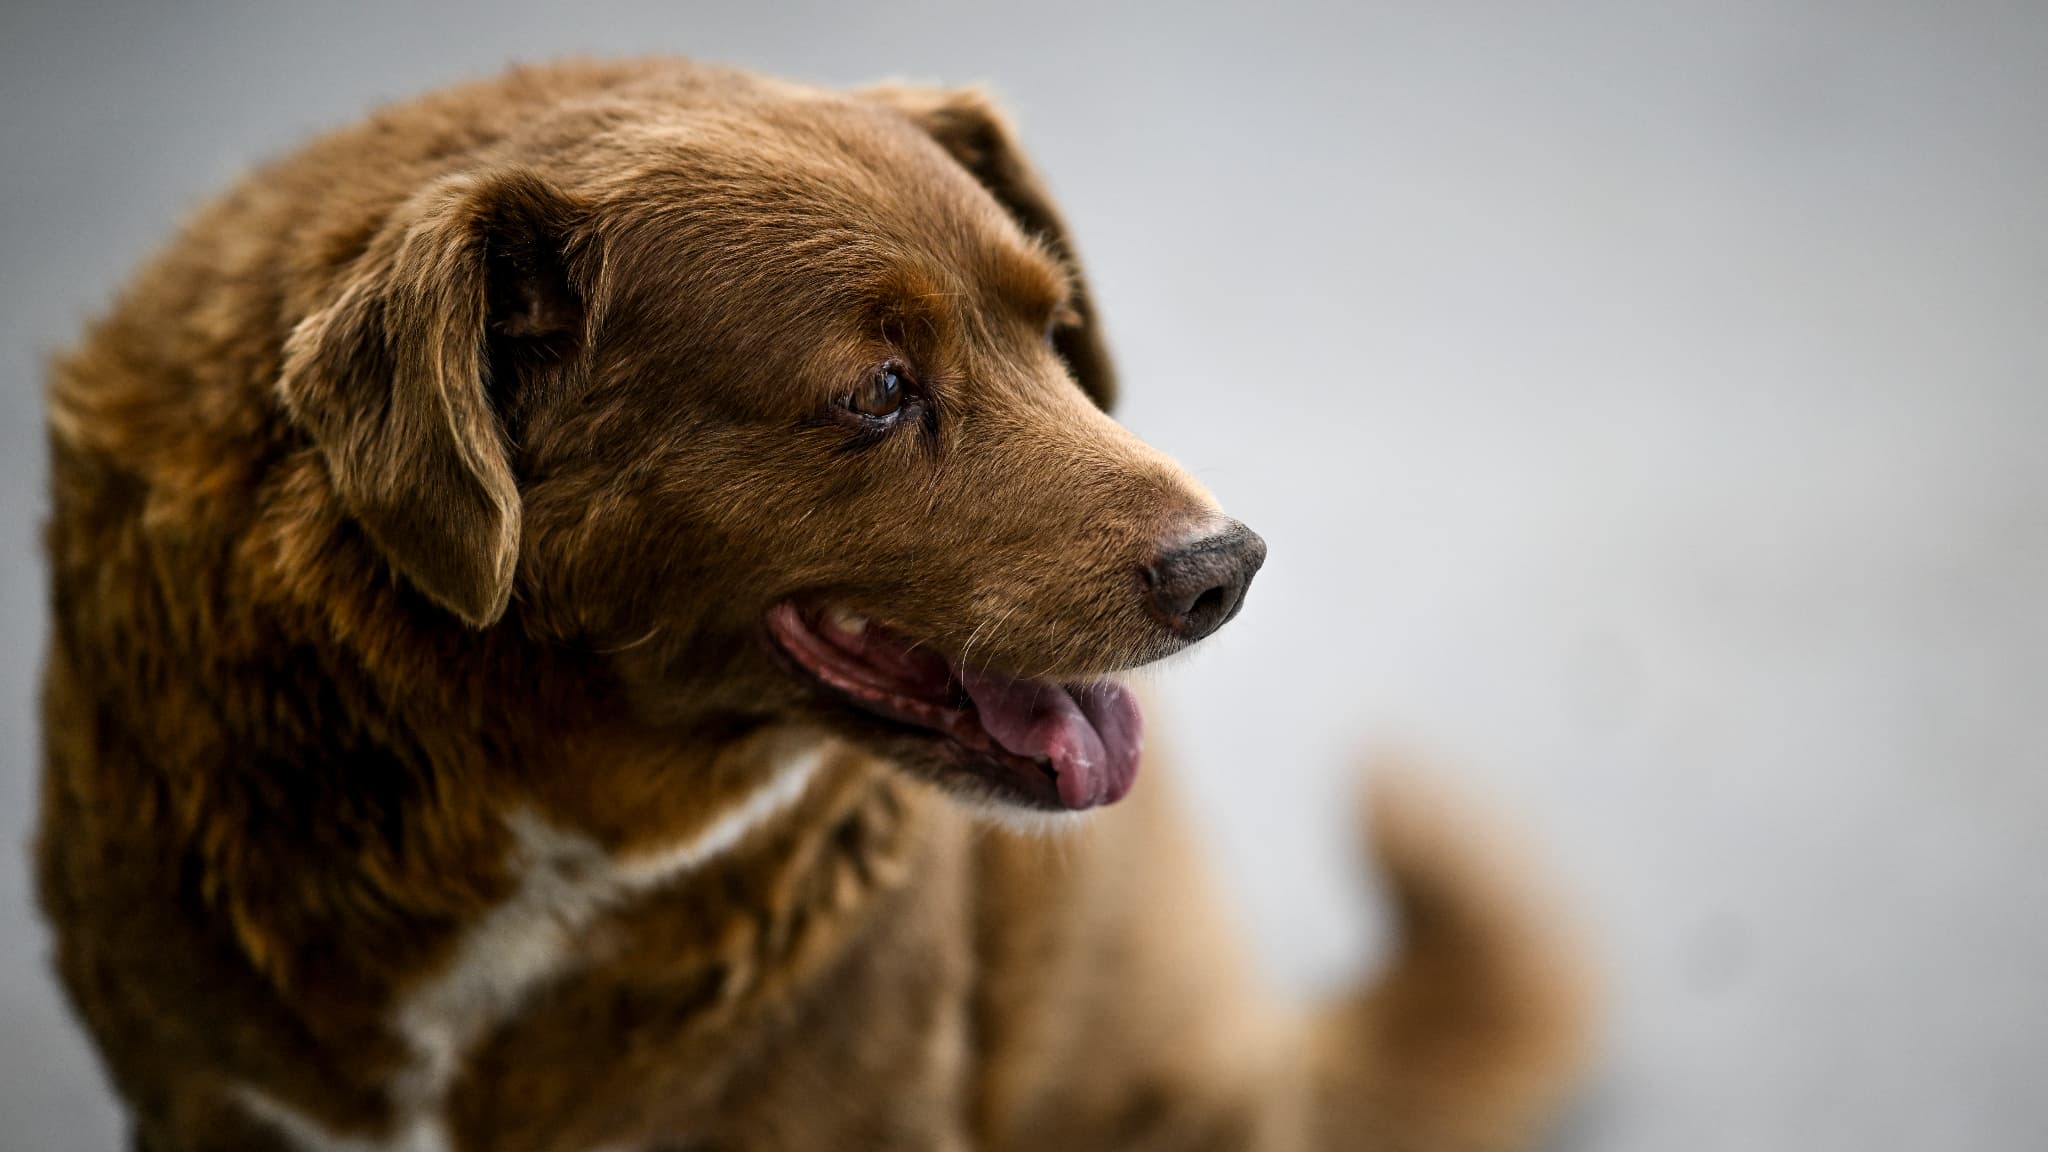 Le Guinness World Records retire à "Bobi" son titre de chien le plus vieux du monde